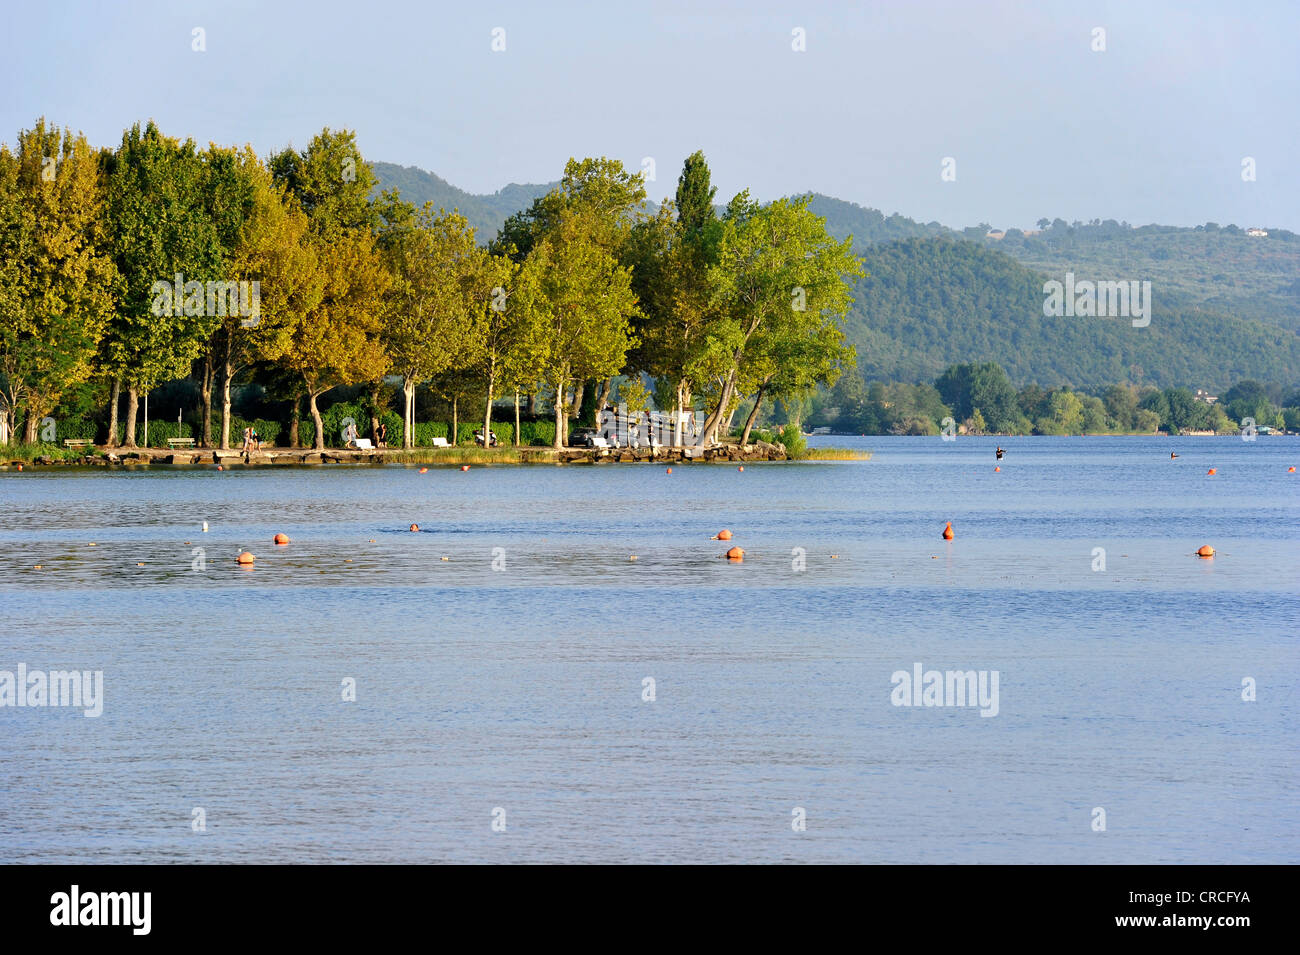 Waterfront of Lago di Bolsena, Lake Bolsena, Bolsena, Lazio, Italy, Europe Stock Photo